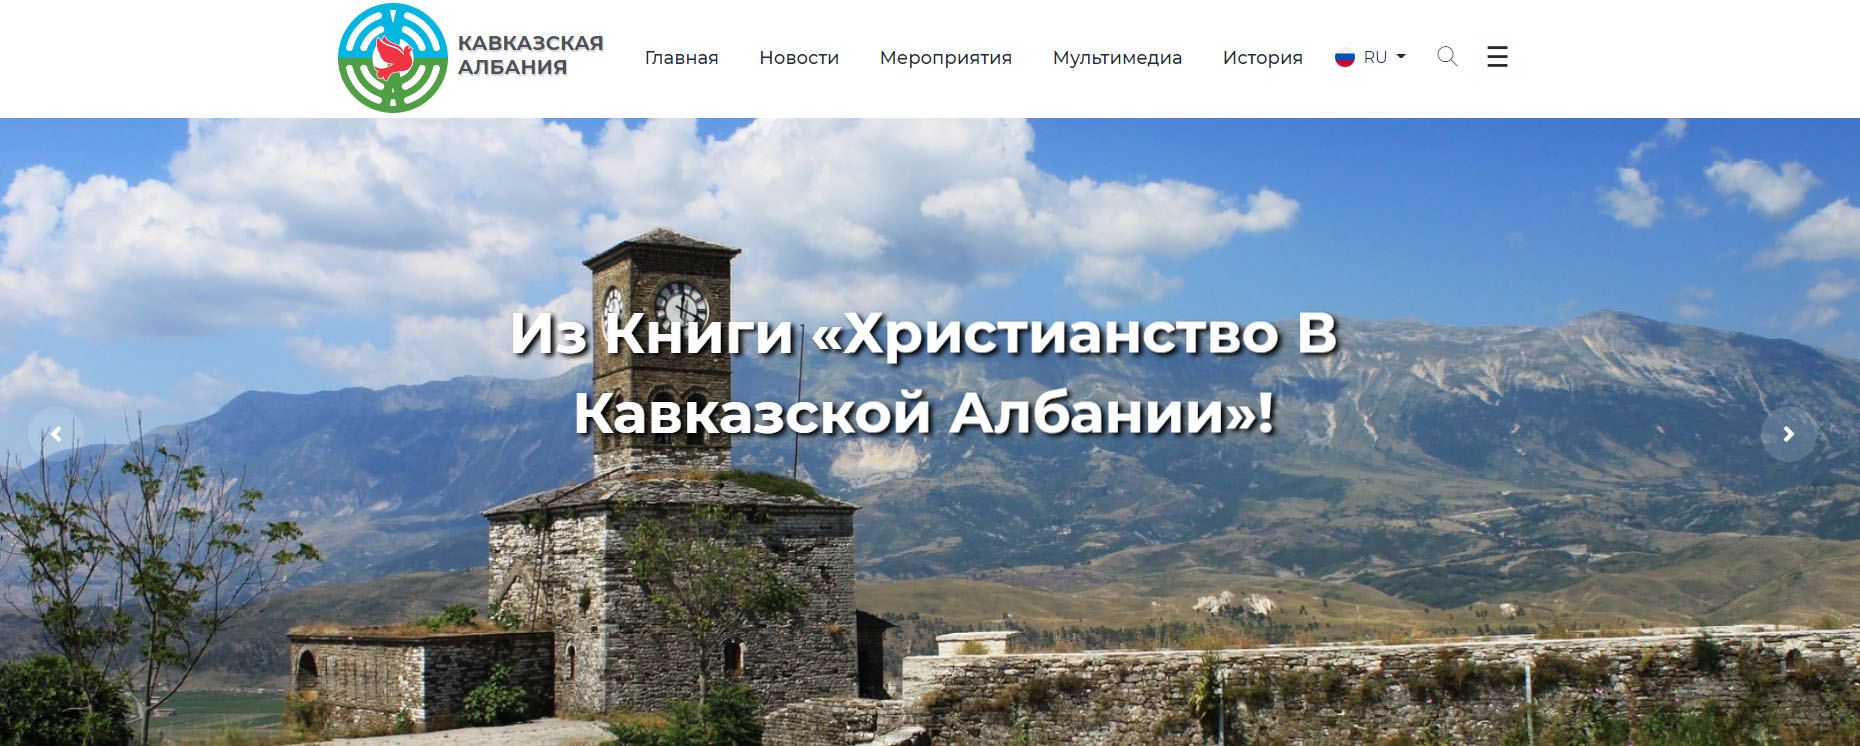 Запущен сайт о наследии Кавказской Албании (ФОТО)